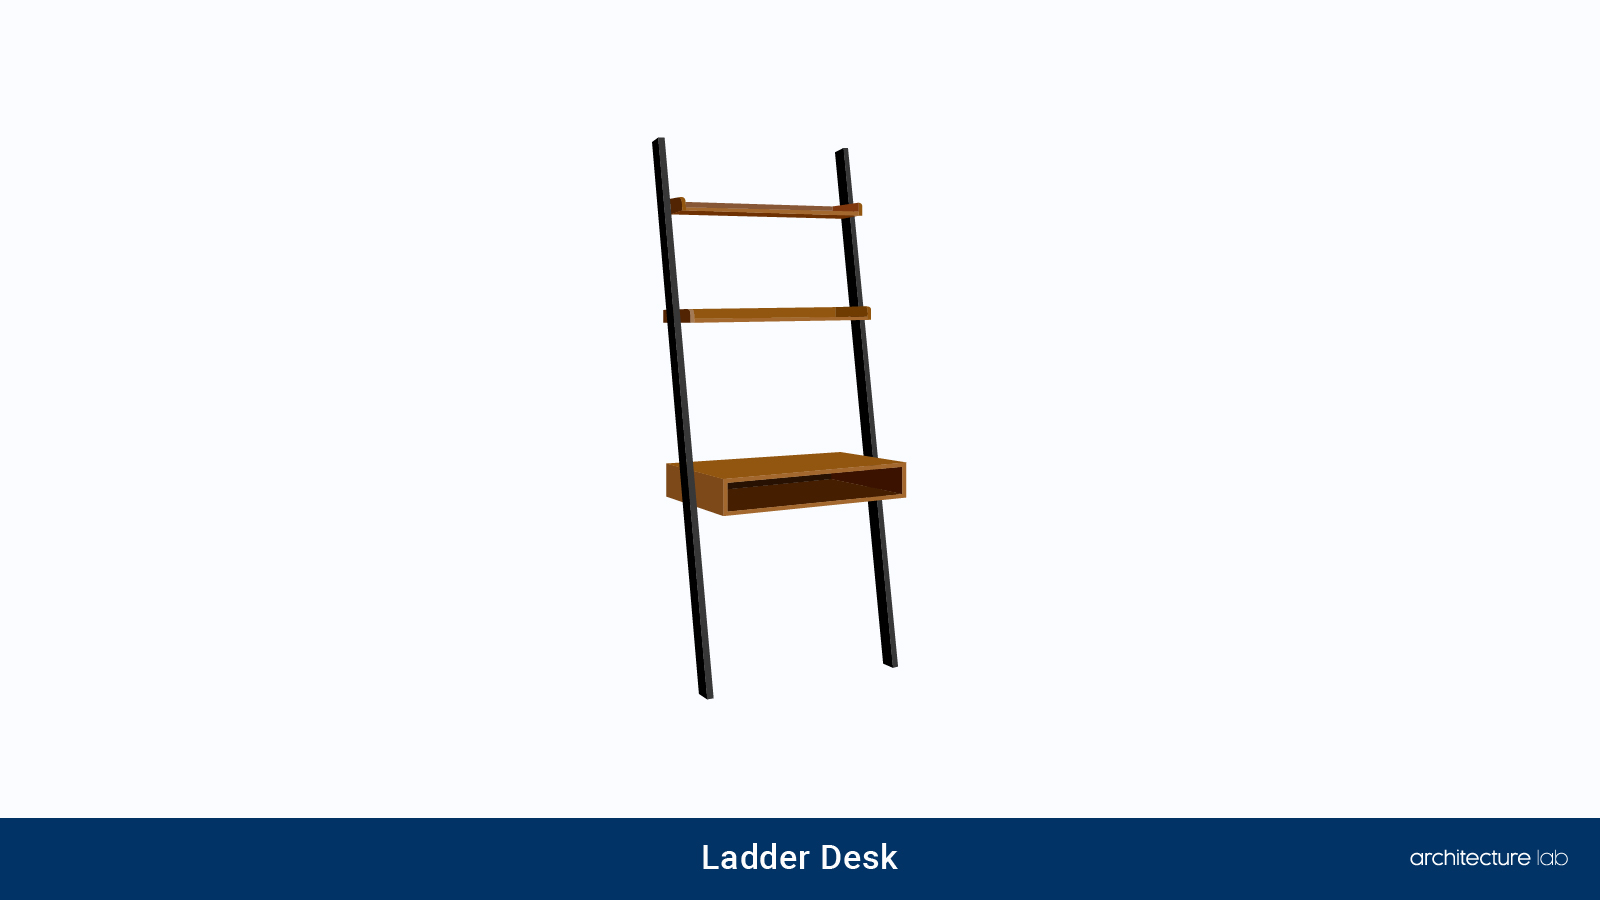 17. Ladder desk